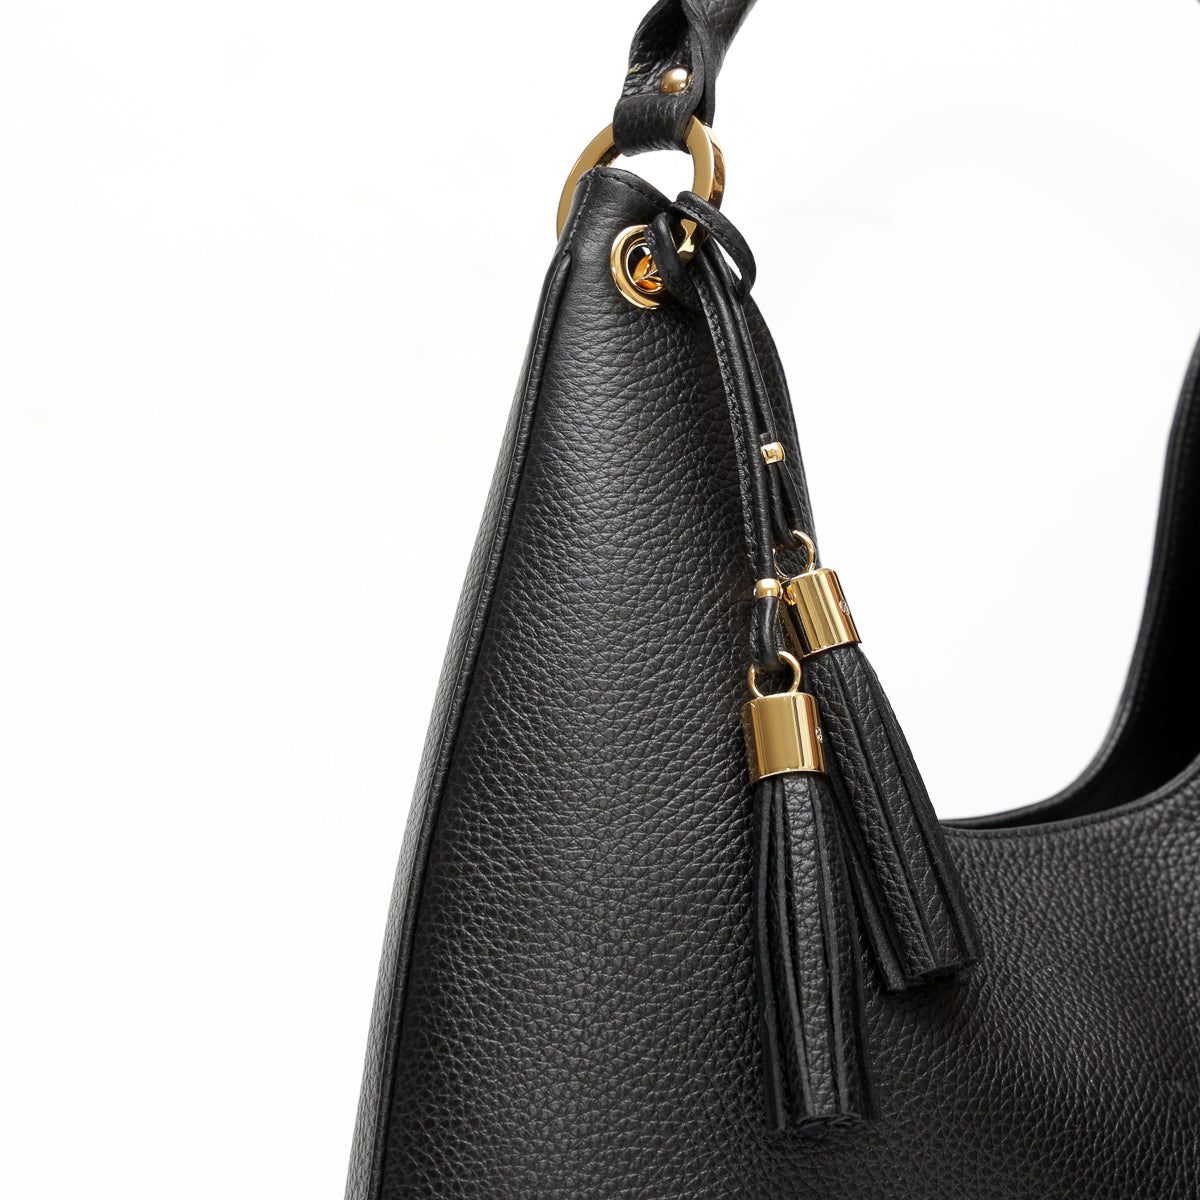 Lou bag, borsa in pelle martellata da donna con tracolla removibile, modello a spalla, colore nero, prodotta da Pianigiani